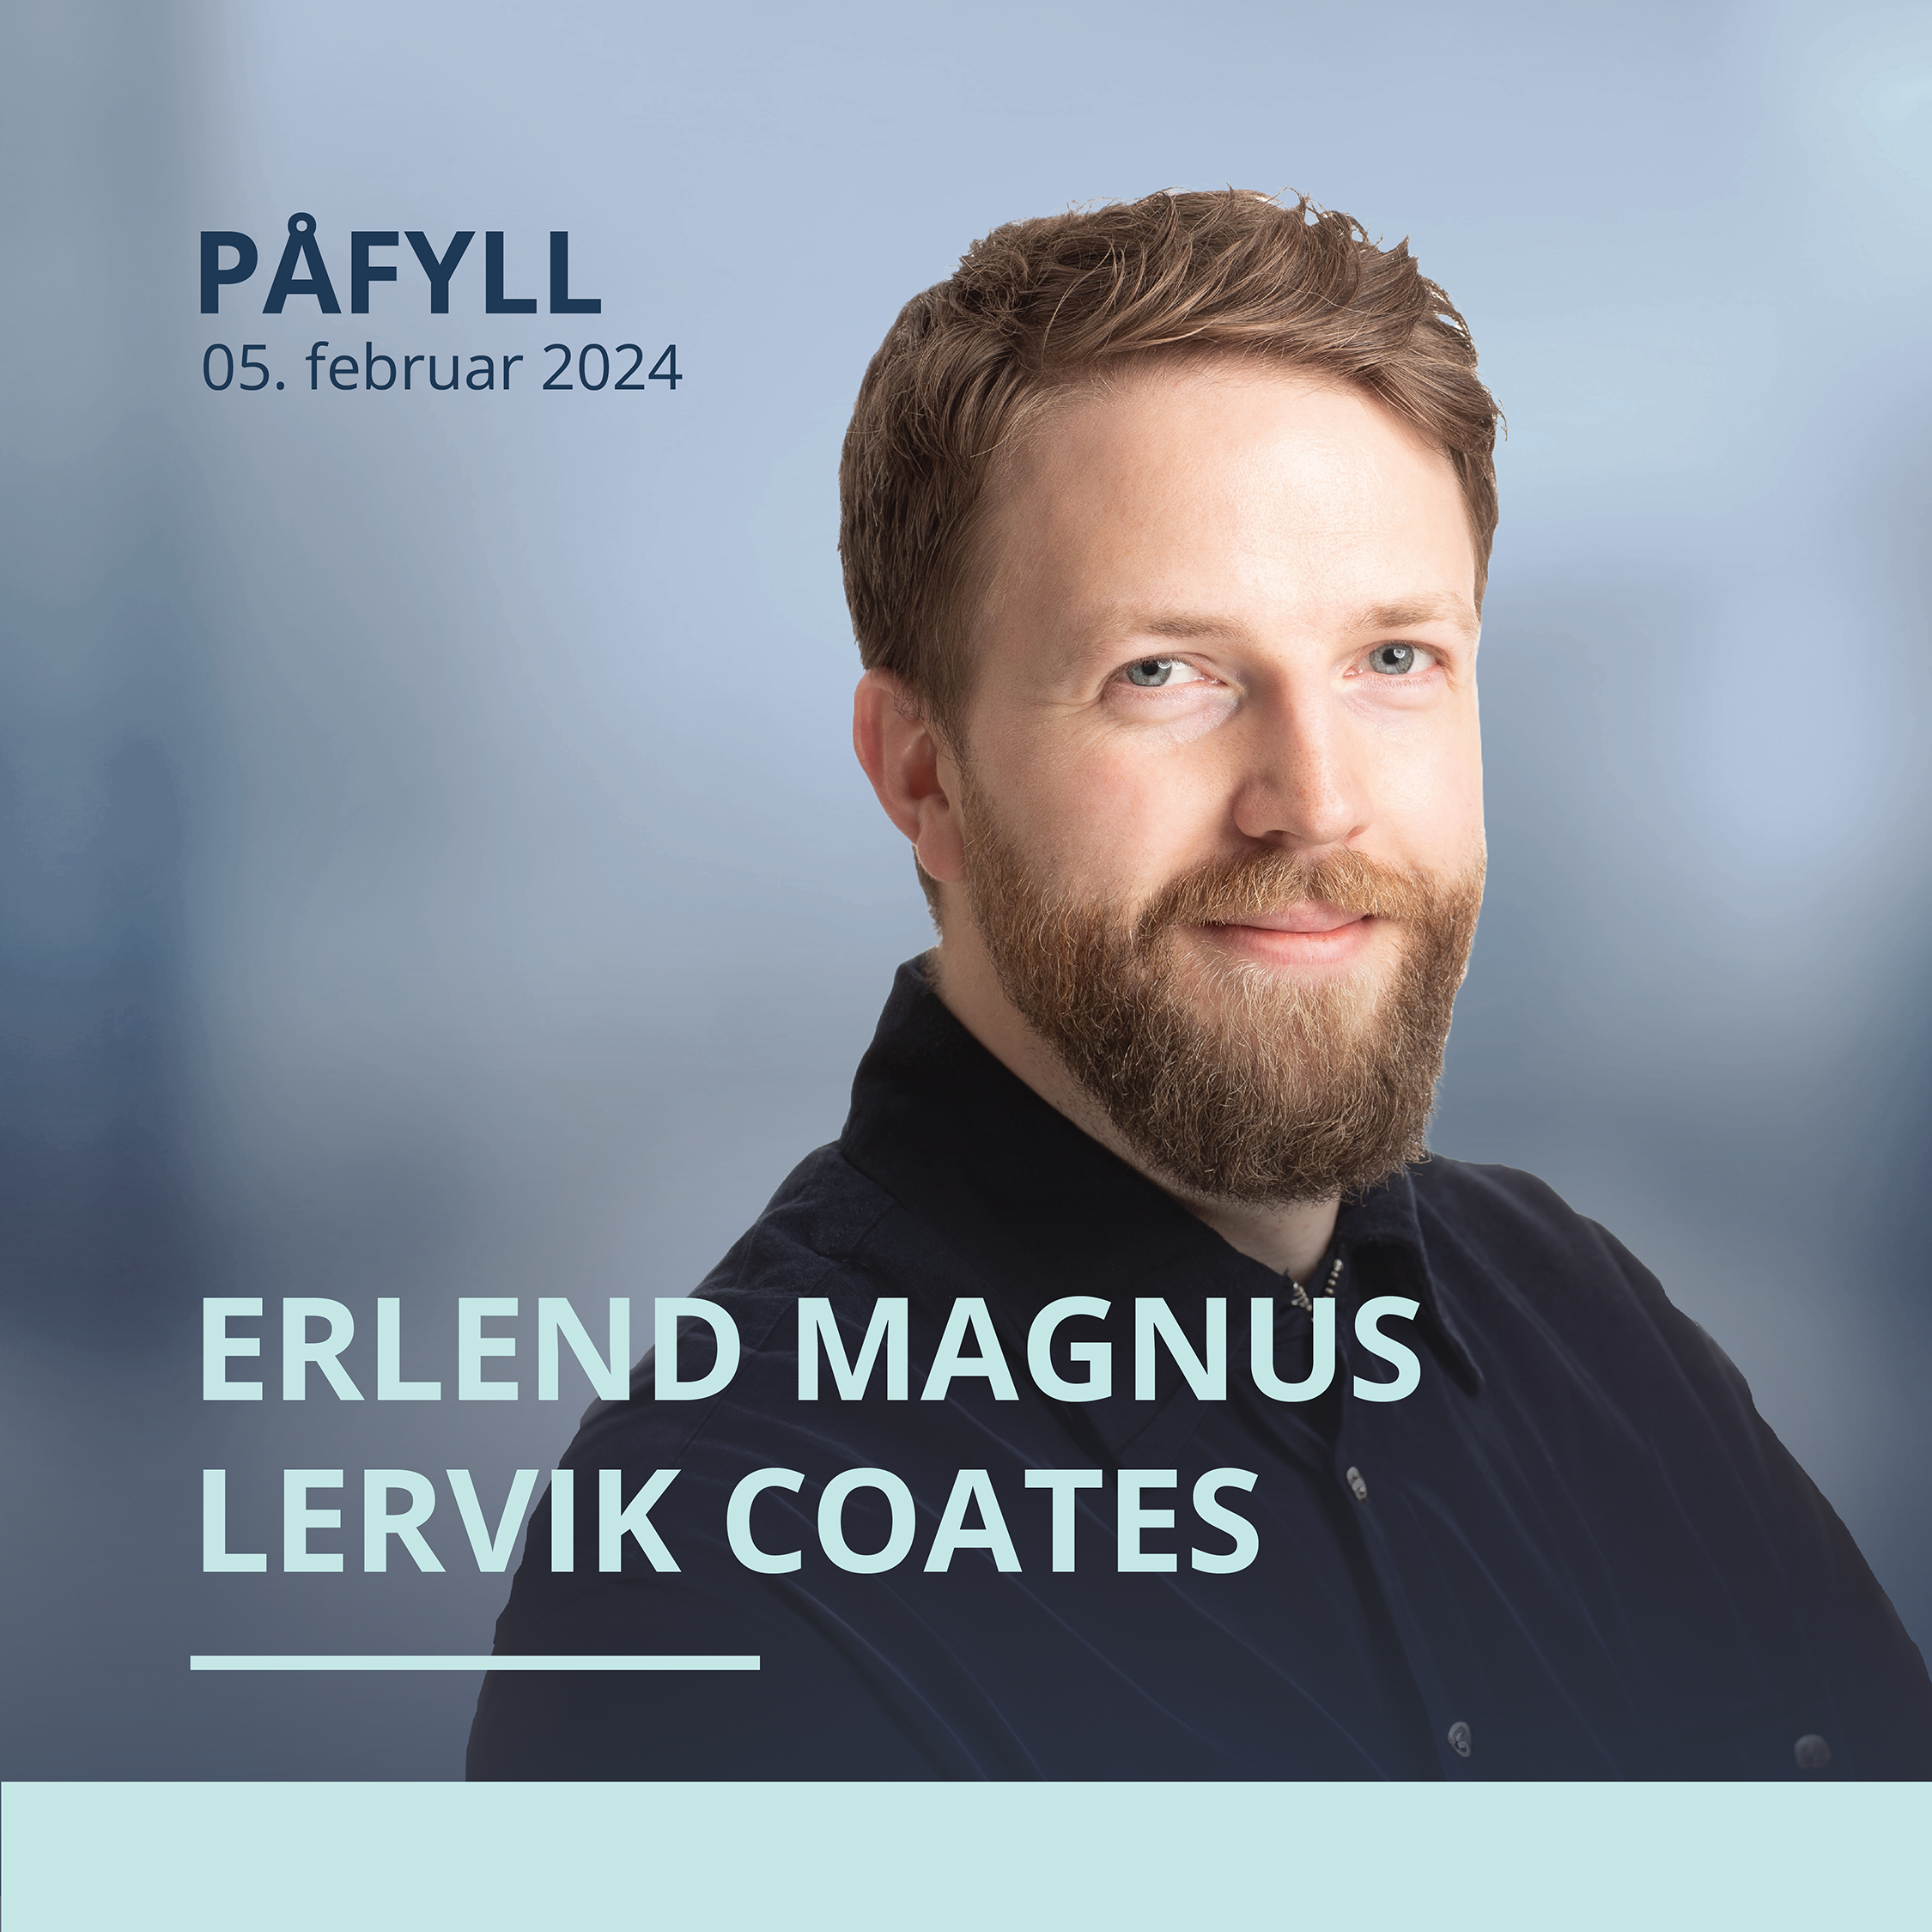 Erlend Magnus Lervik Coates